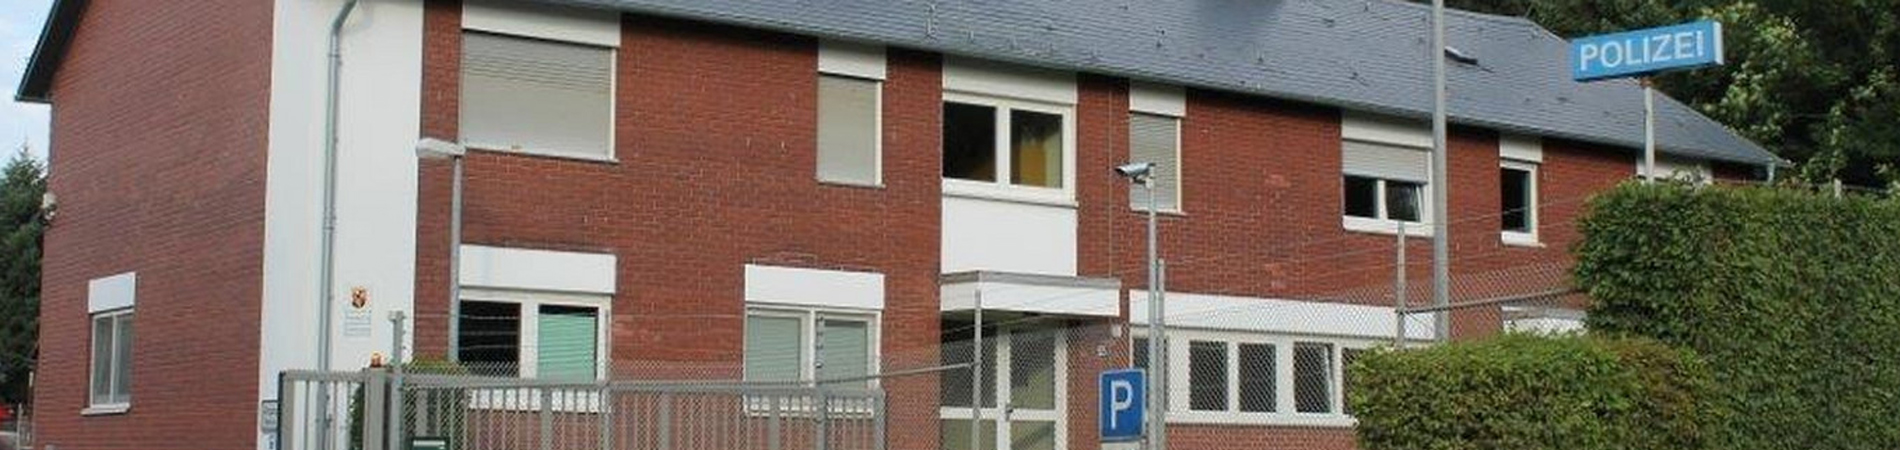 Dienstgebäude Polizeiinspektion Morbach